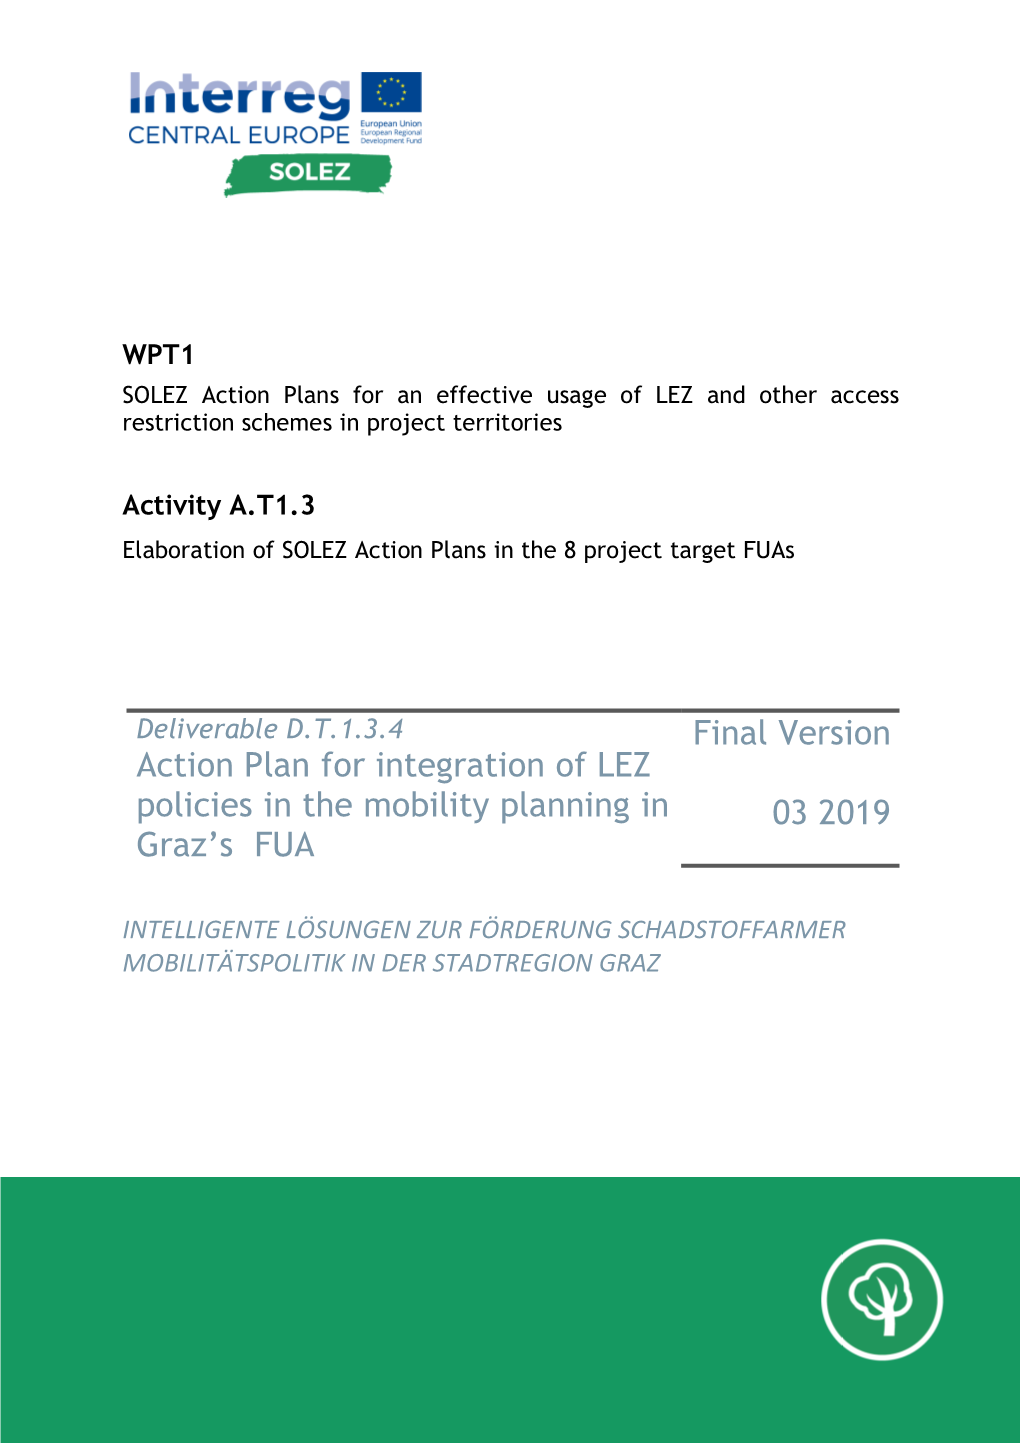 Graz Action Plan